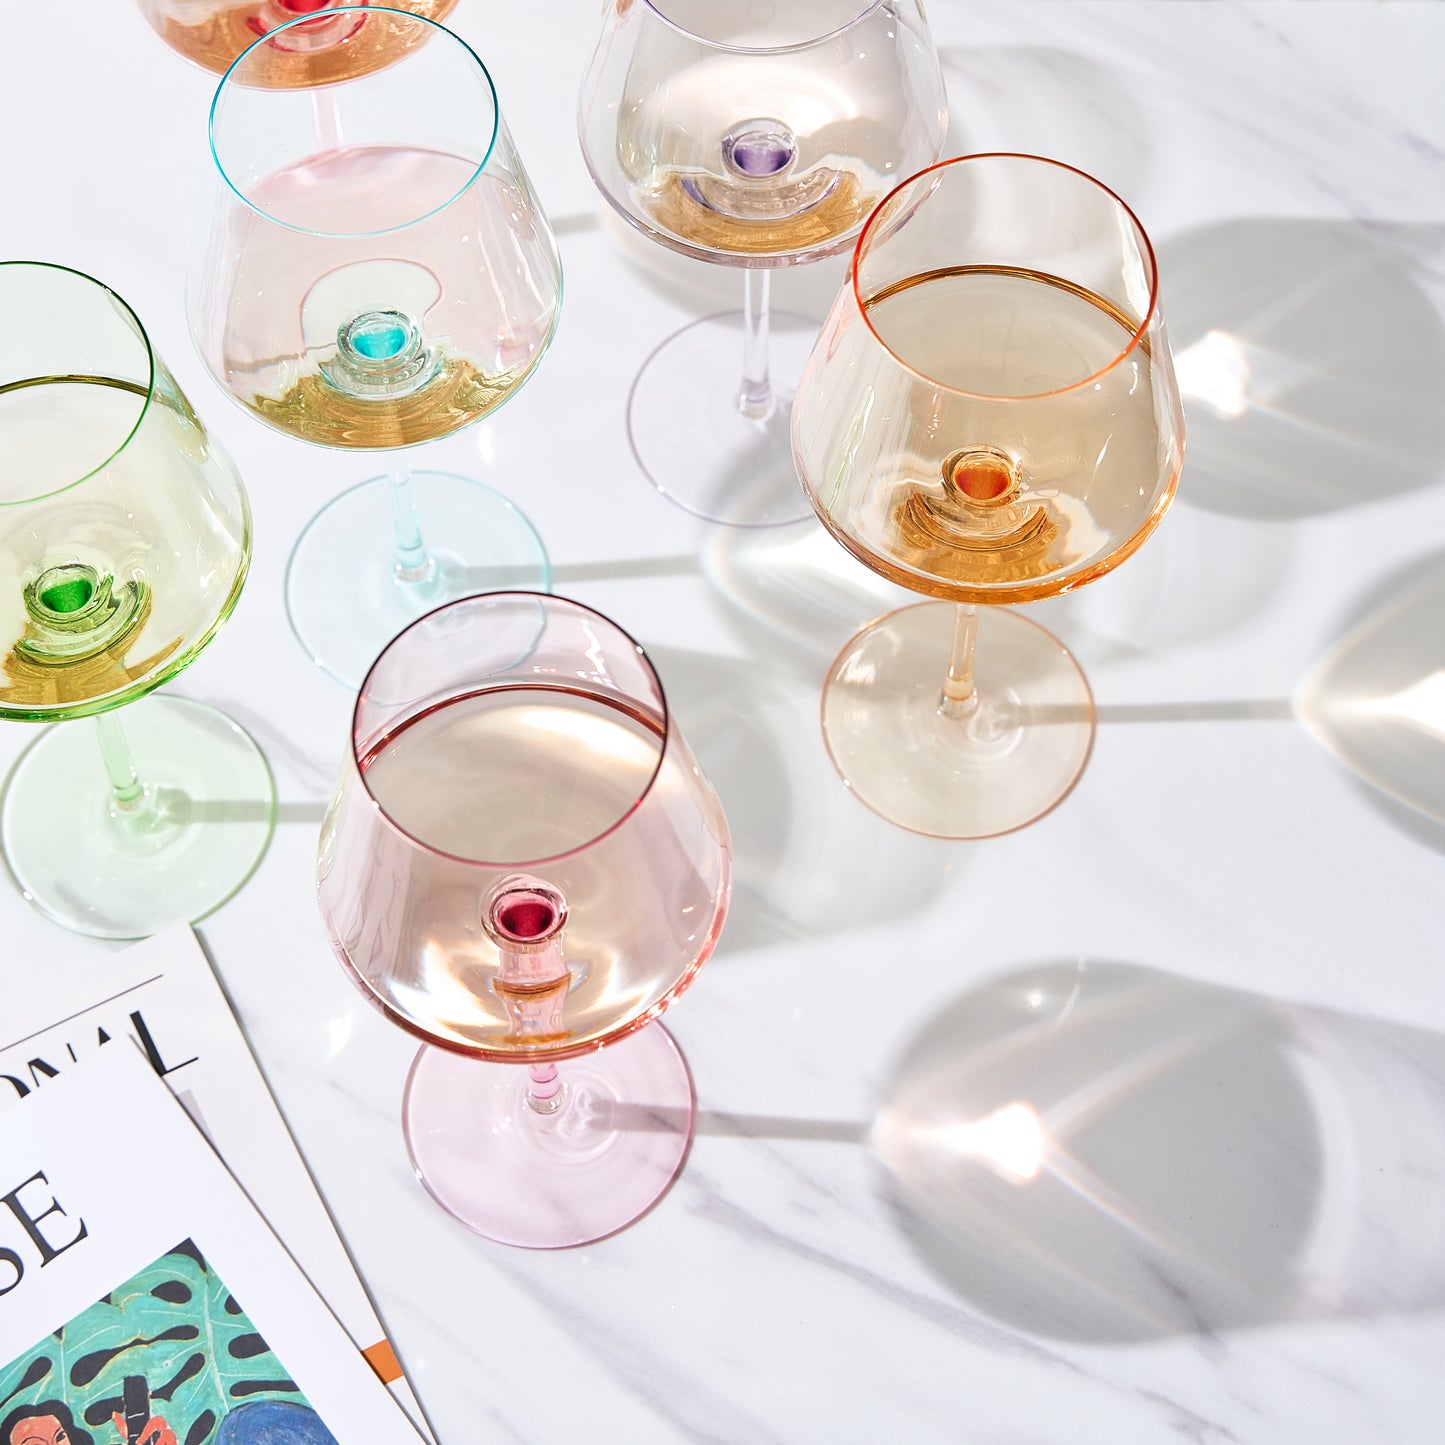 Monet Wine Glassware, Set of 6